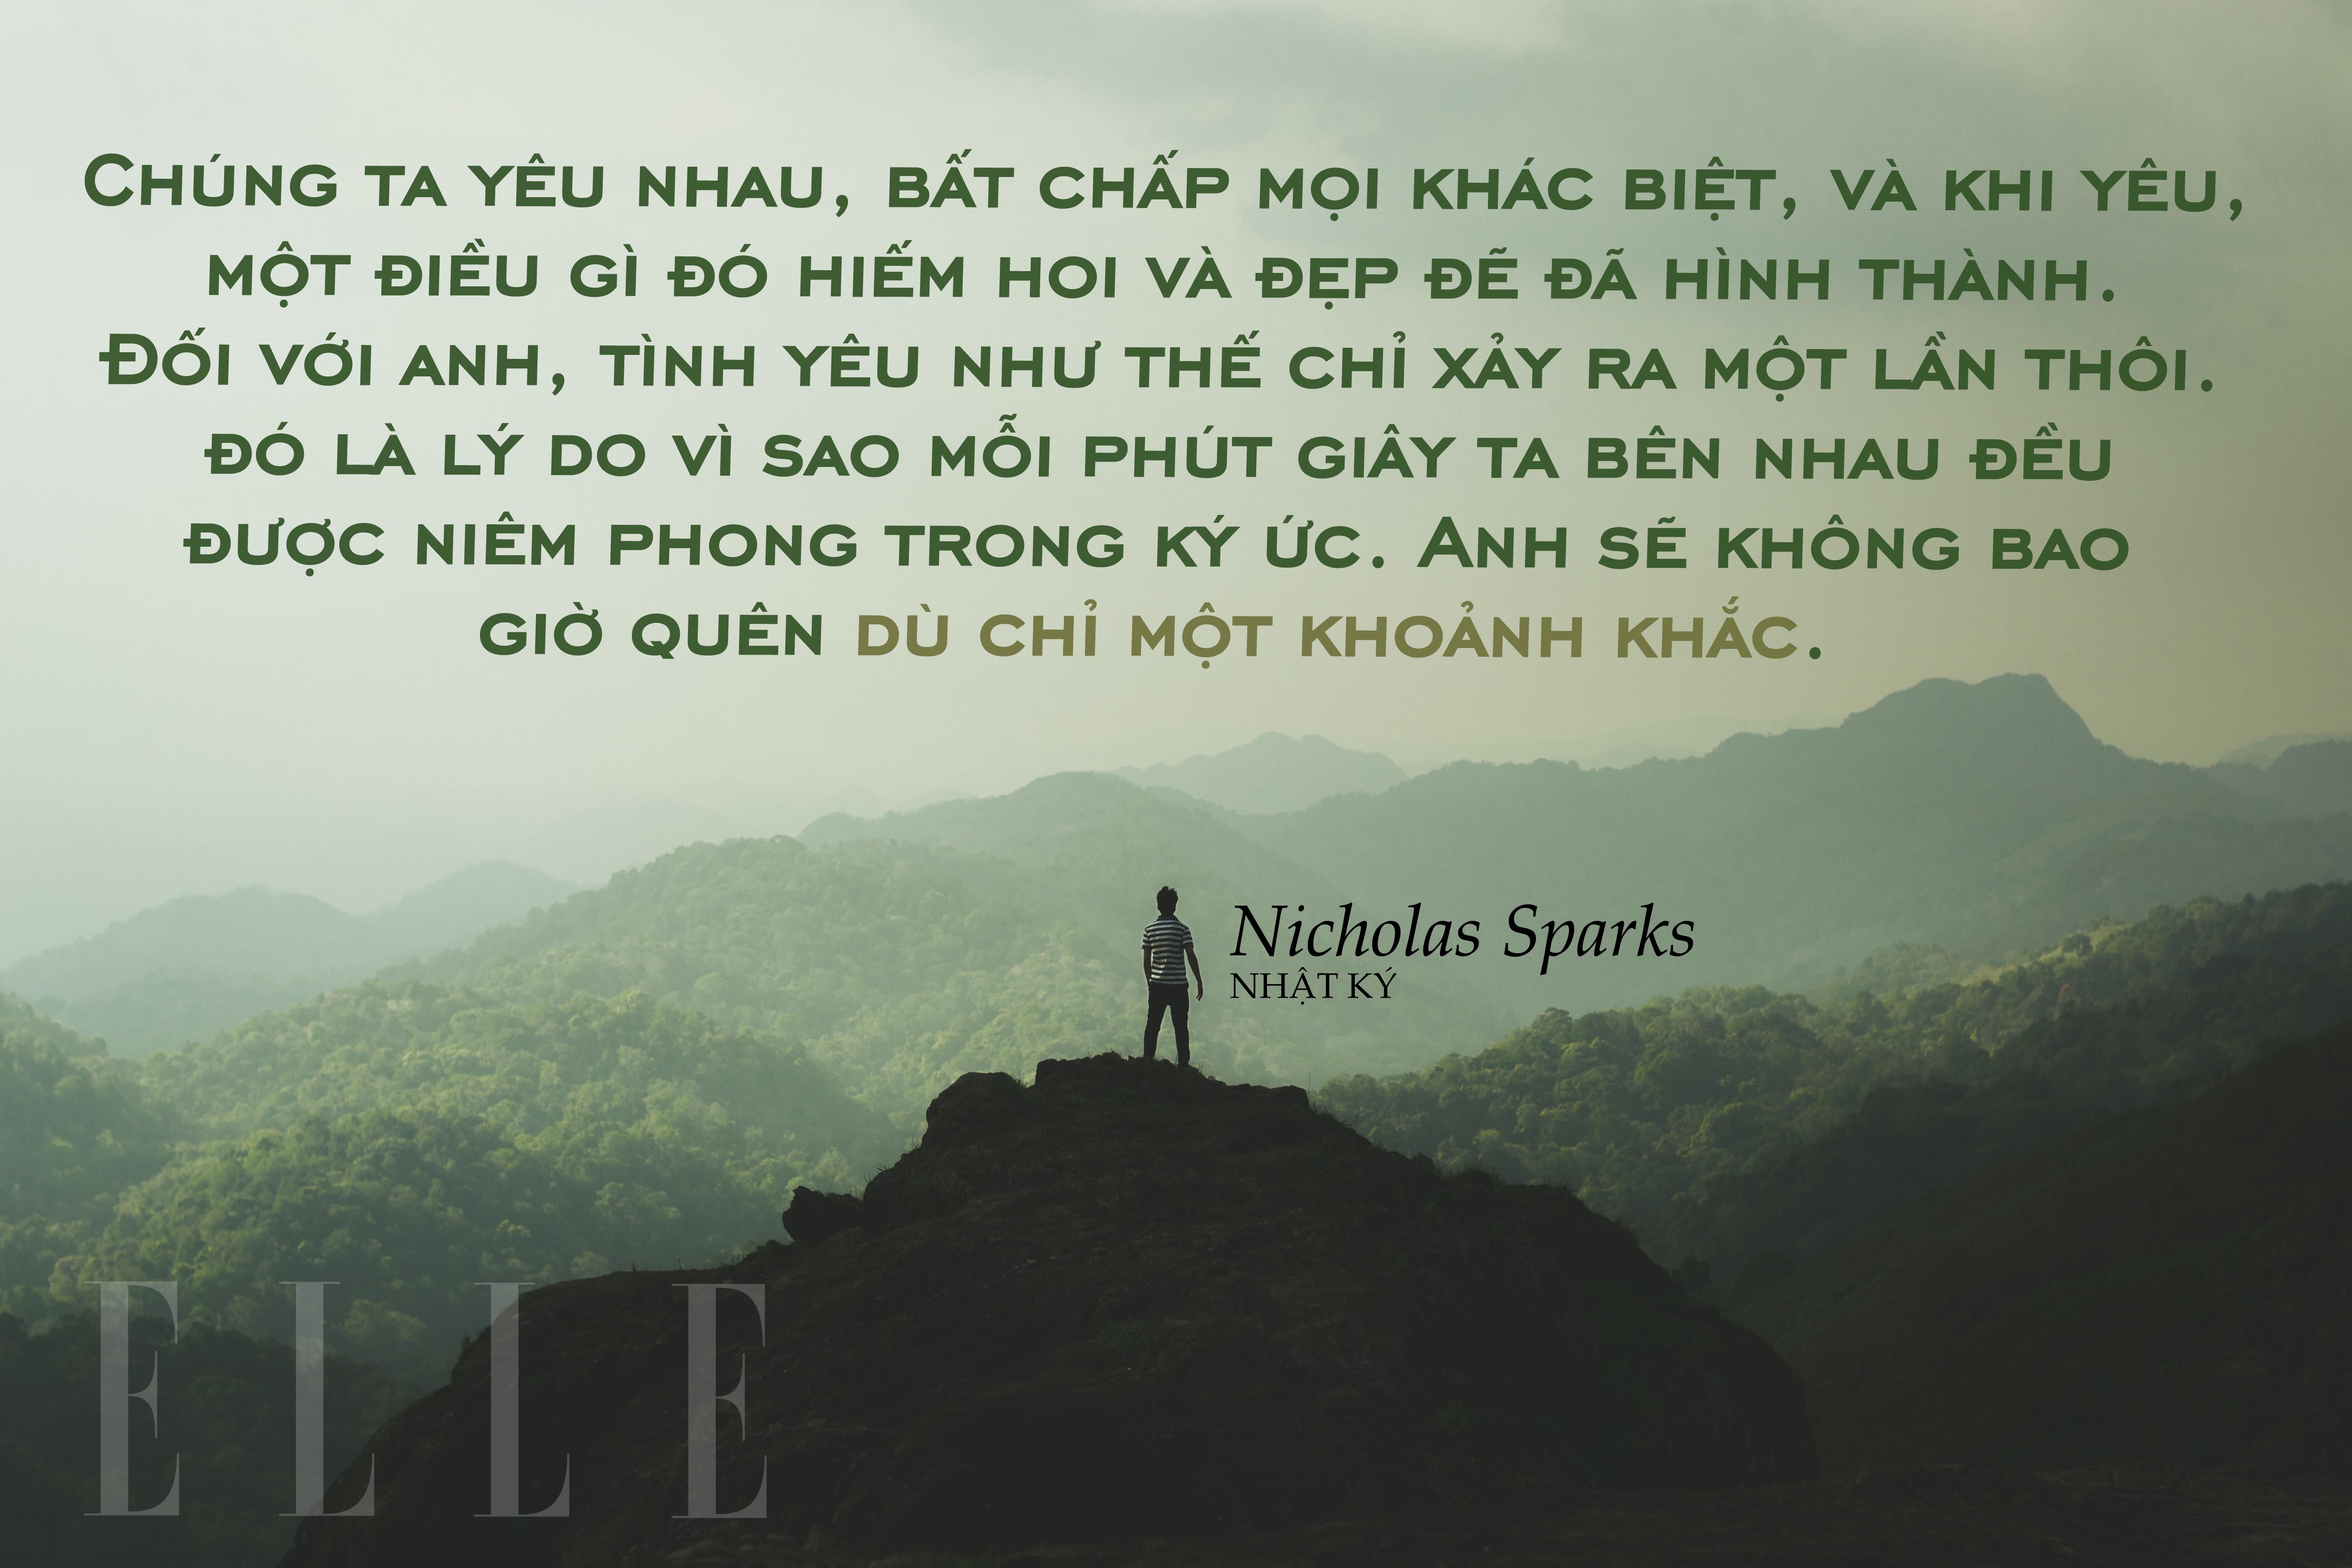 Nicholas Sparks 7